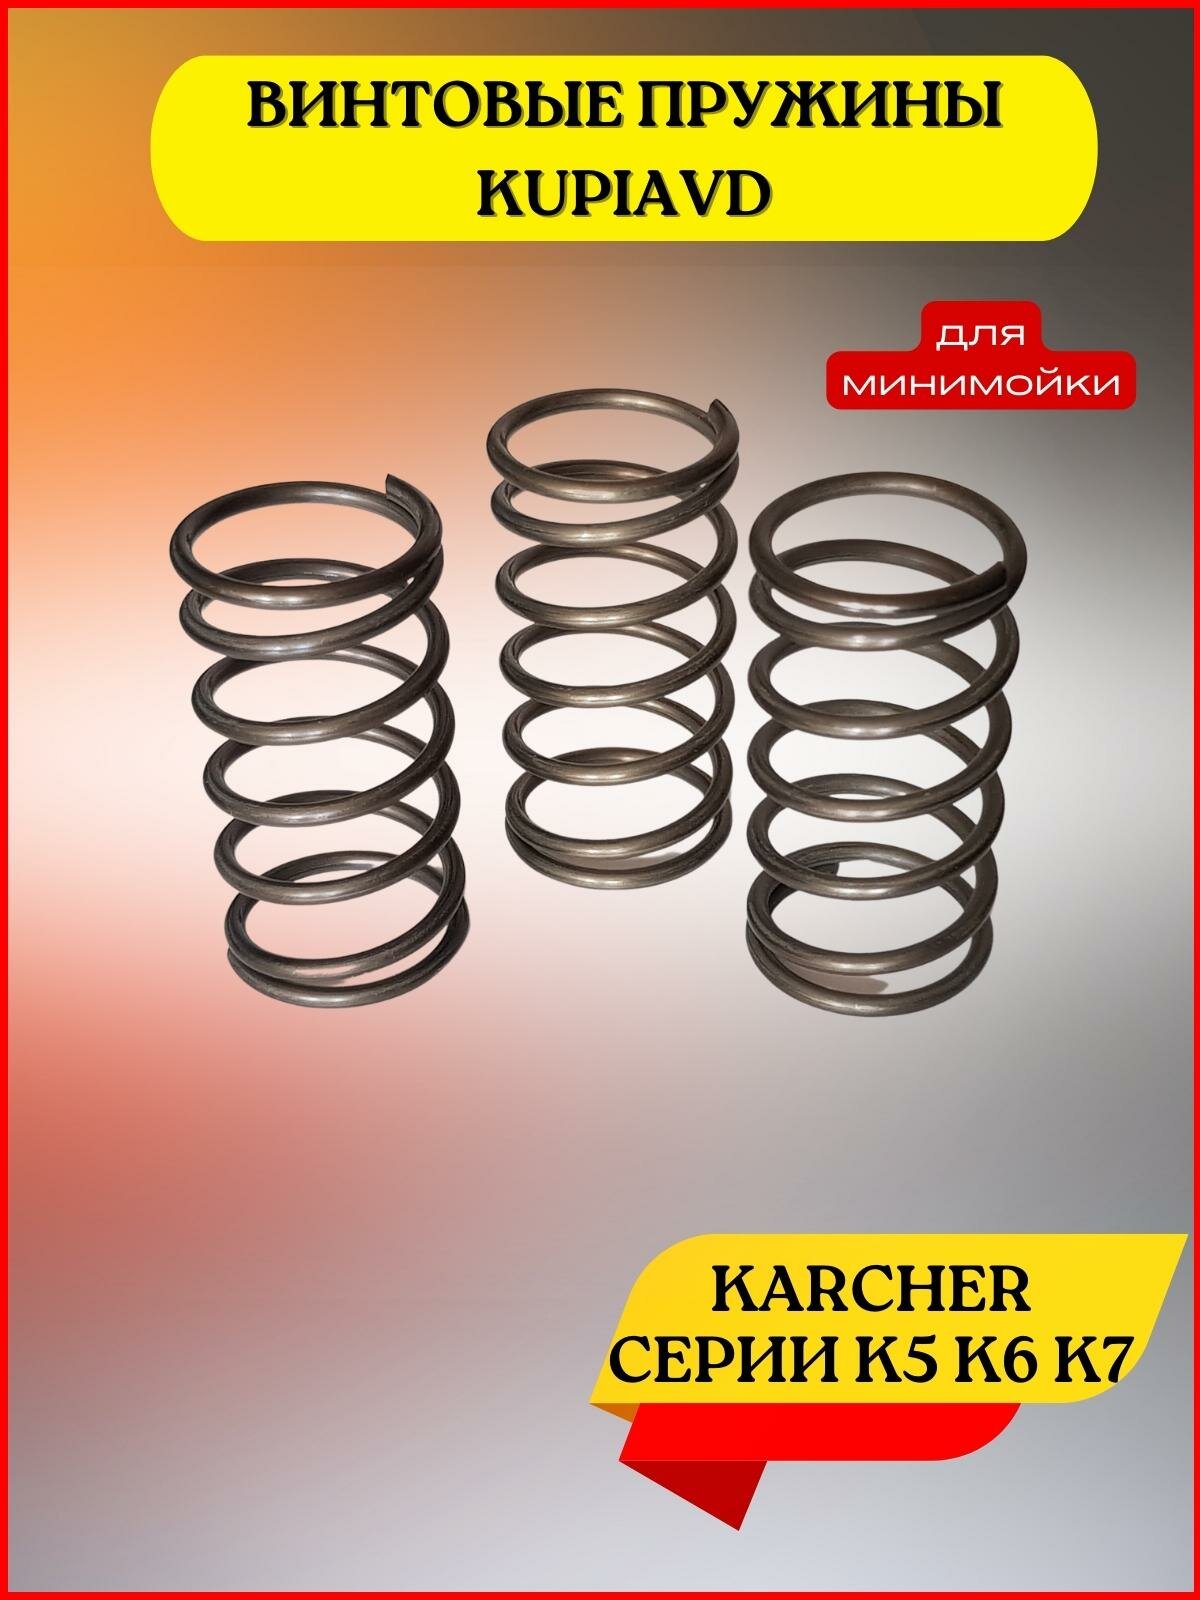 Пружина для аппаратов высокого давления Karcher К6, K7